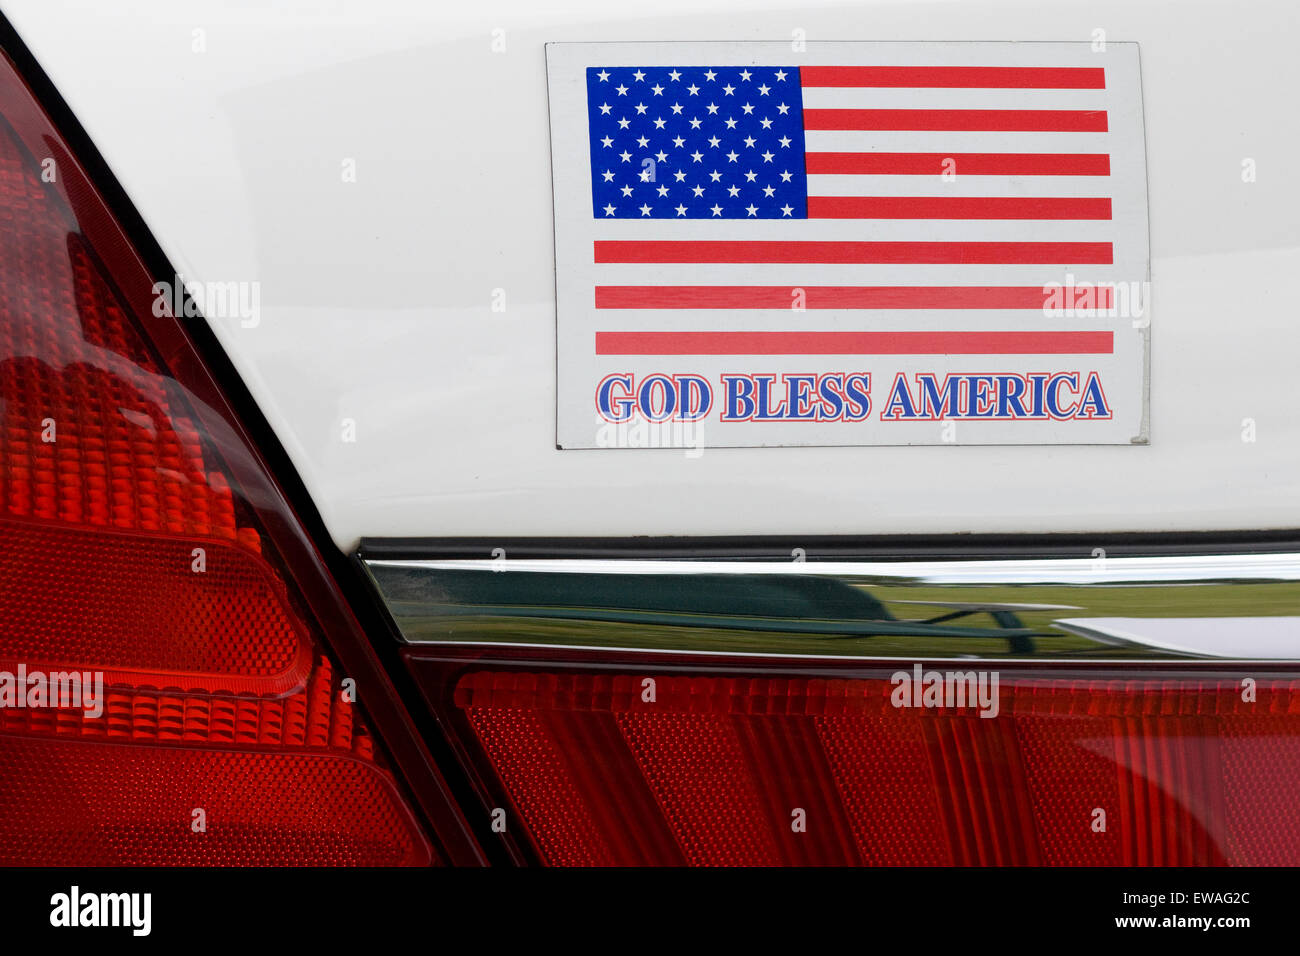 Gott segne Amerika Auto Aufkleber Stockfoto